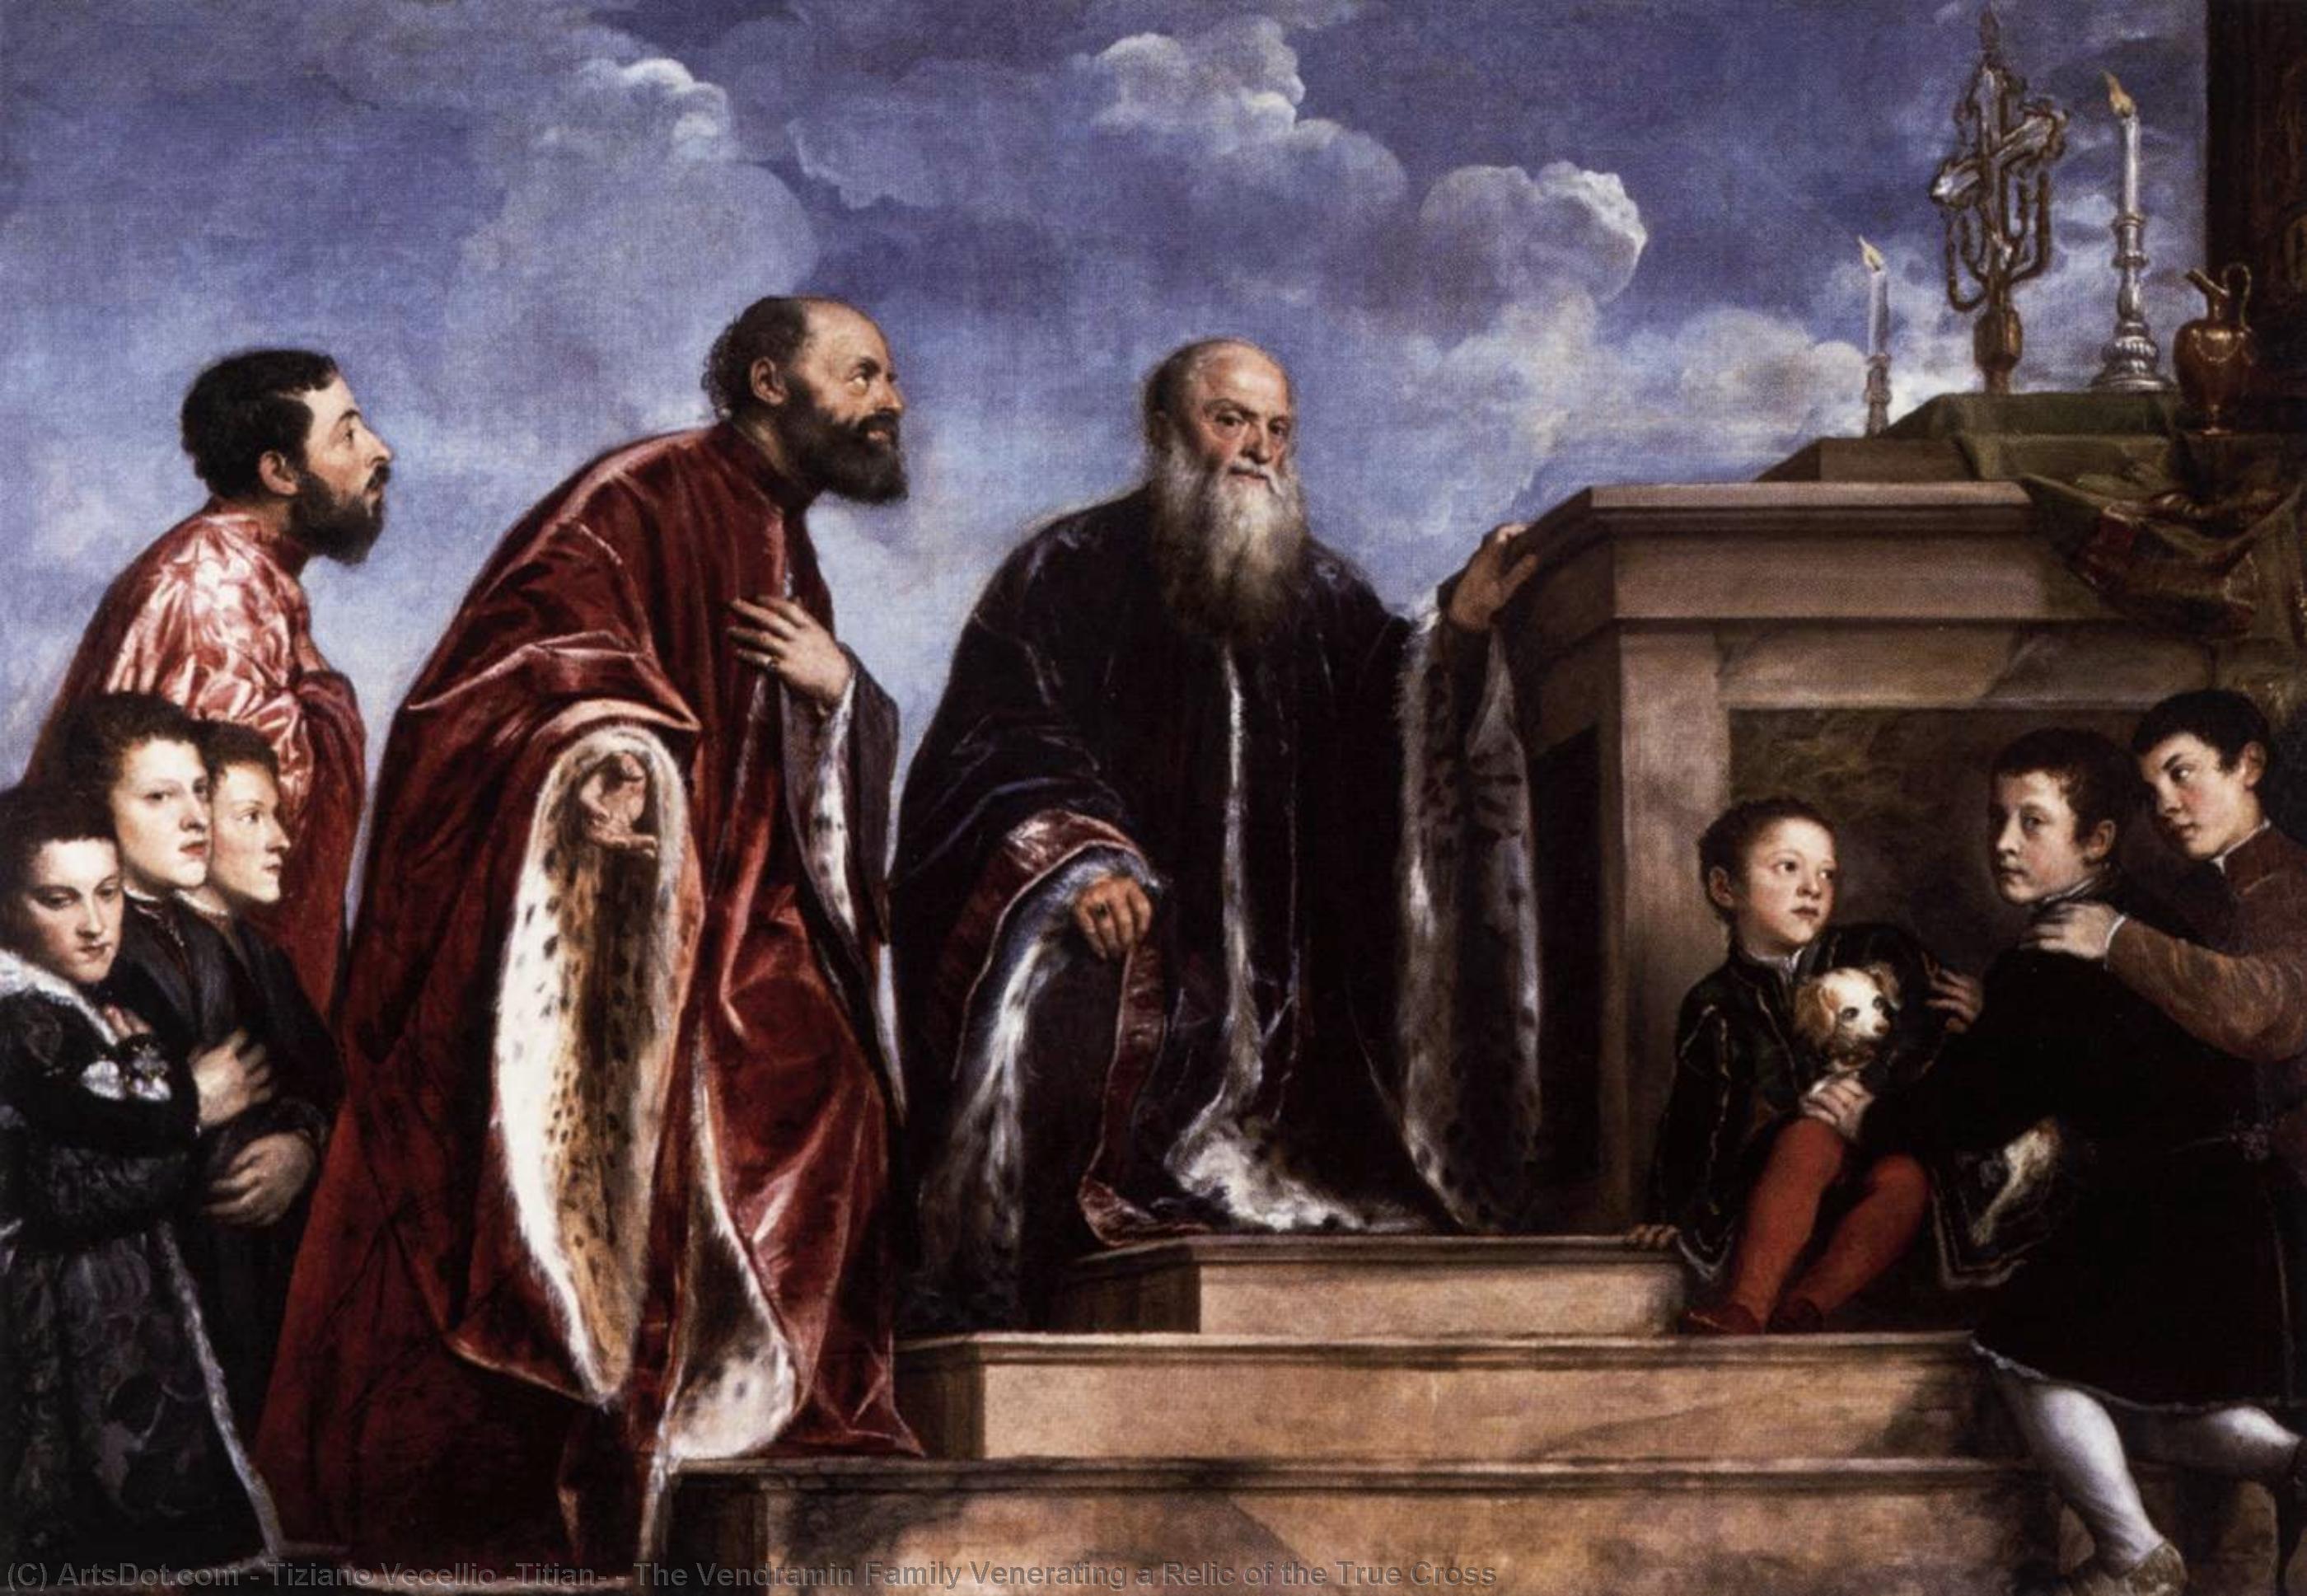 Wikioo.org – La Enciclopedia de las Bellas Artes - Pintura, Obras de arte de Tiziano Vecellio (Titian) - la familia vendramin venerando una reliquia de la verdadera cruz